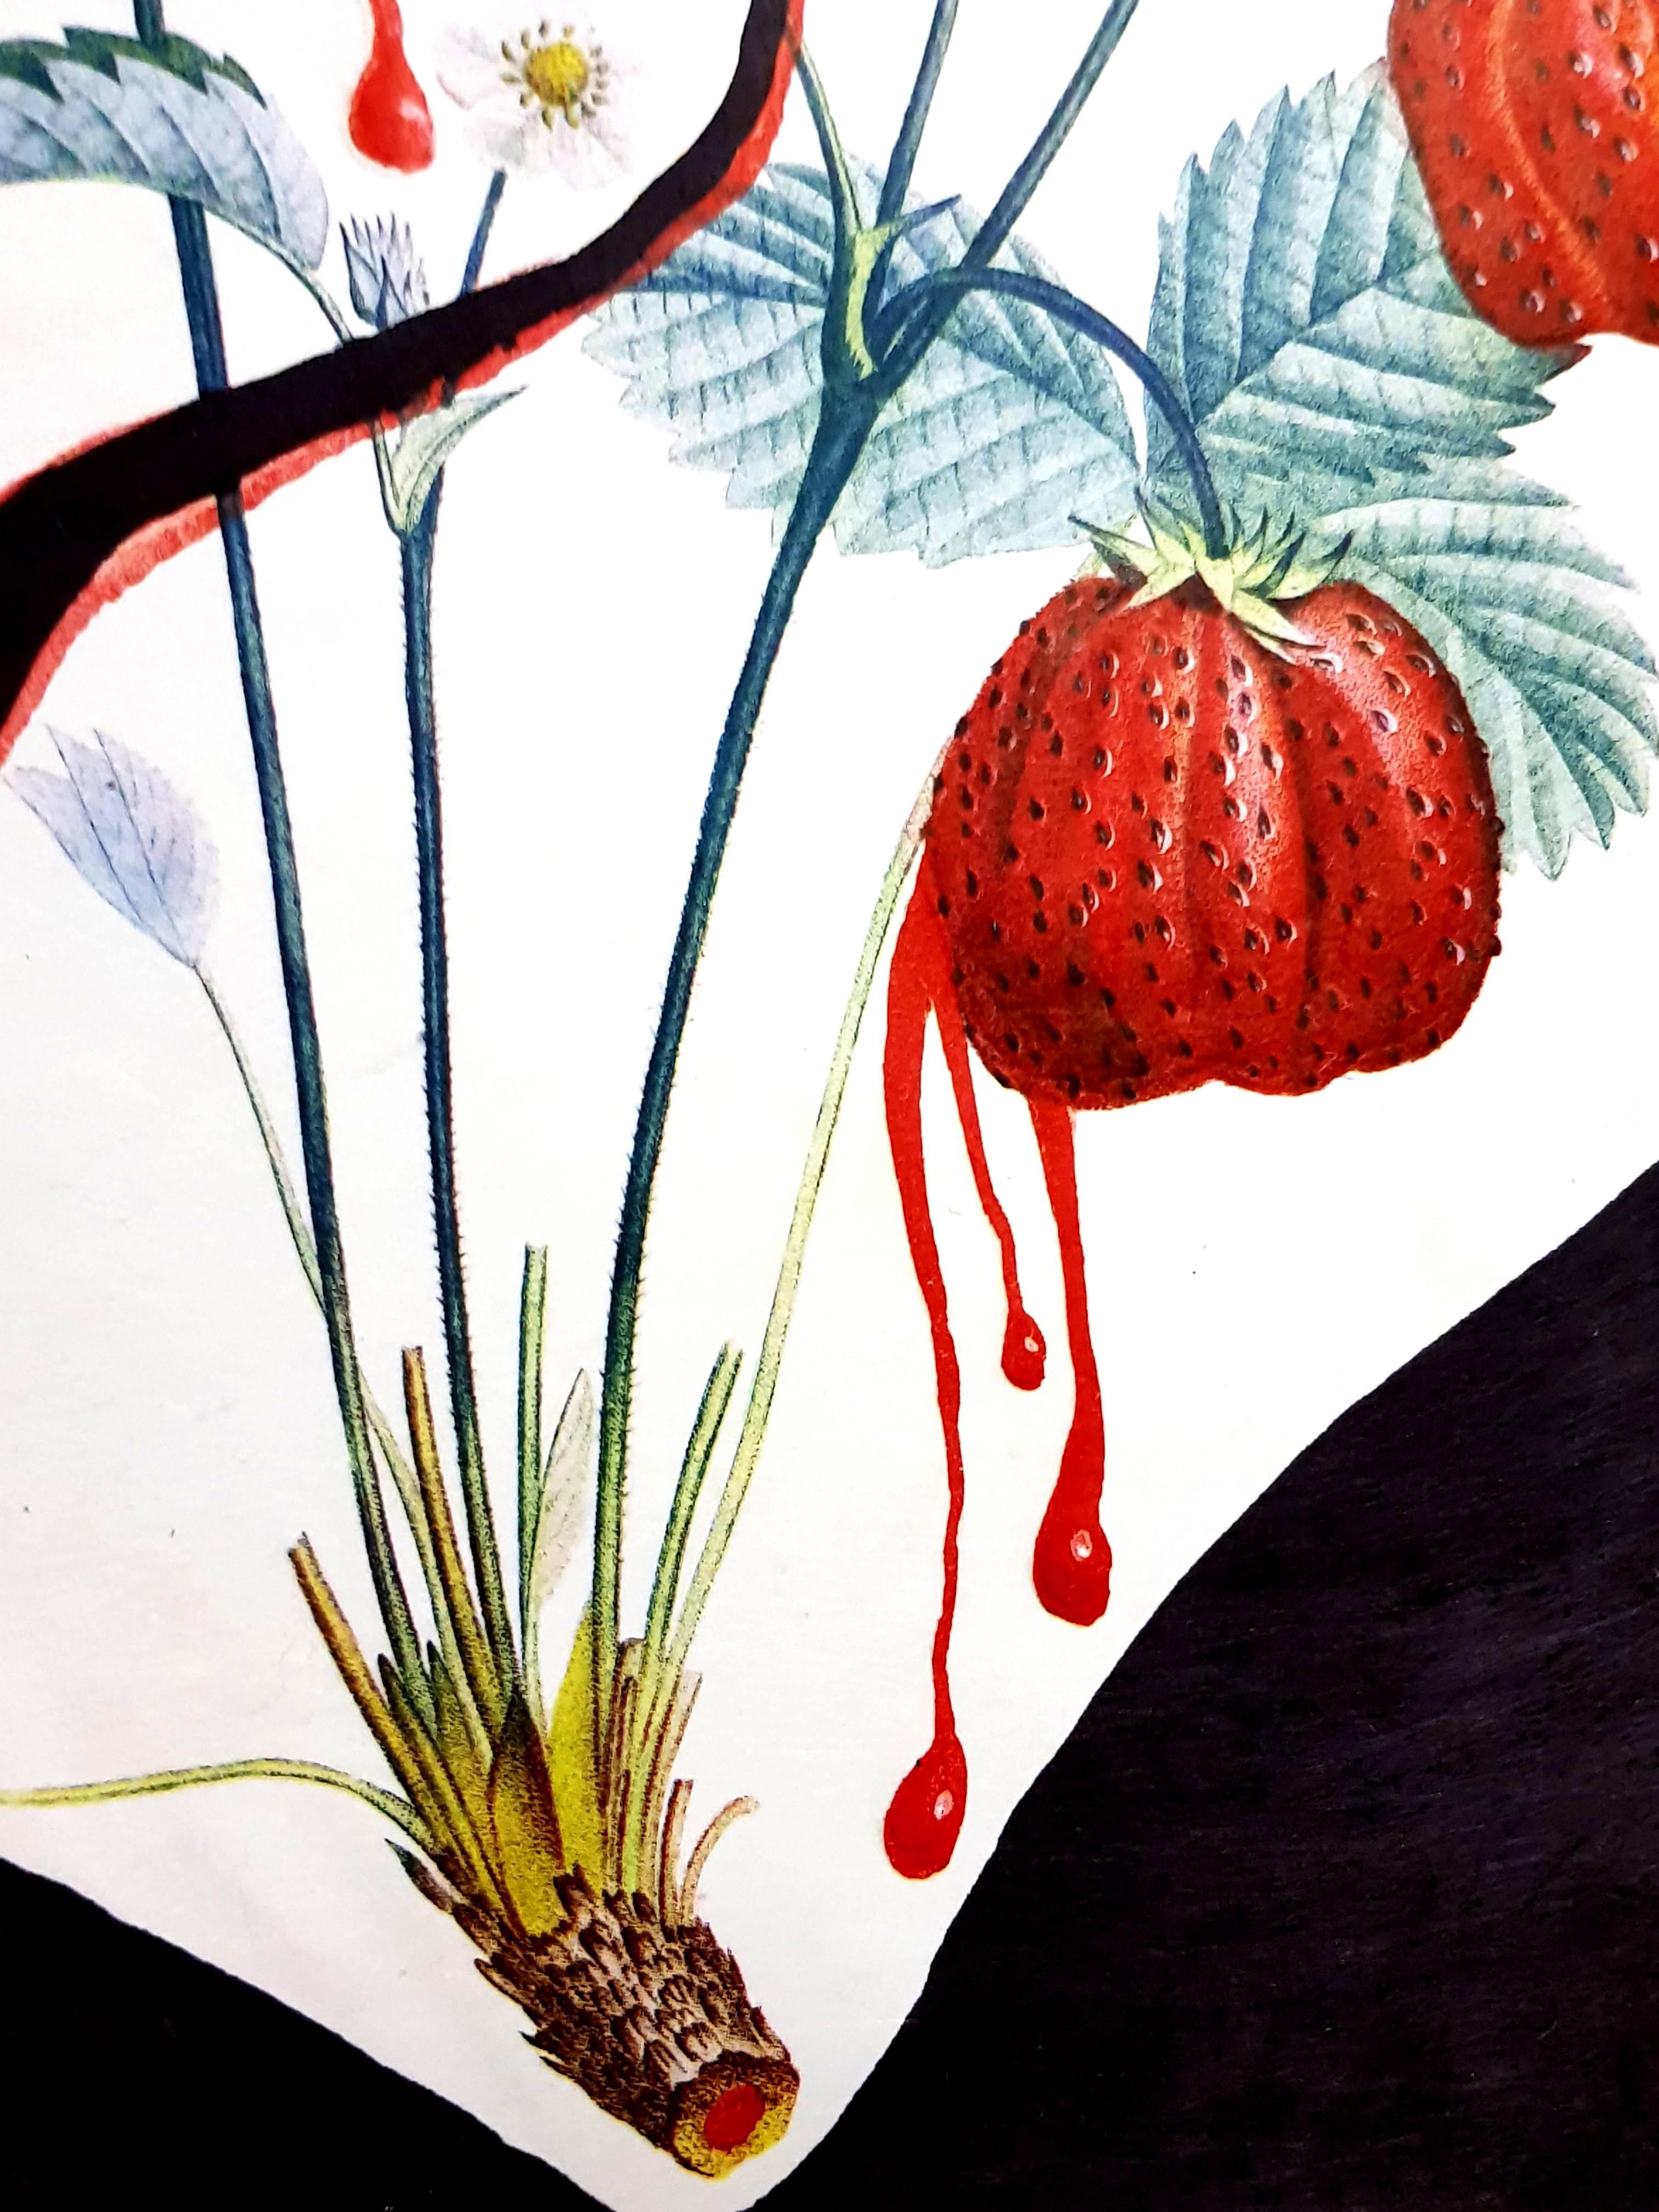 Salvador Dali - Strawberry Heart - Original Hand-Signed Lithograph - Surrealist Print by Salvador Dalí